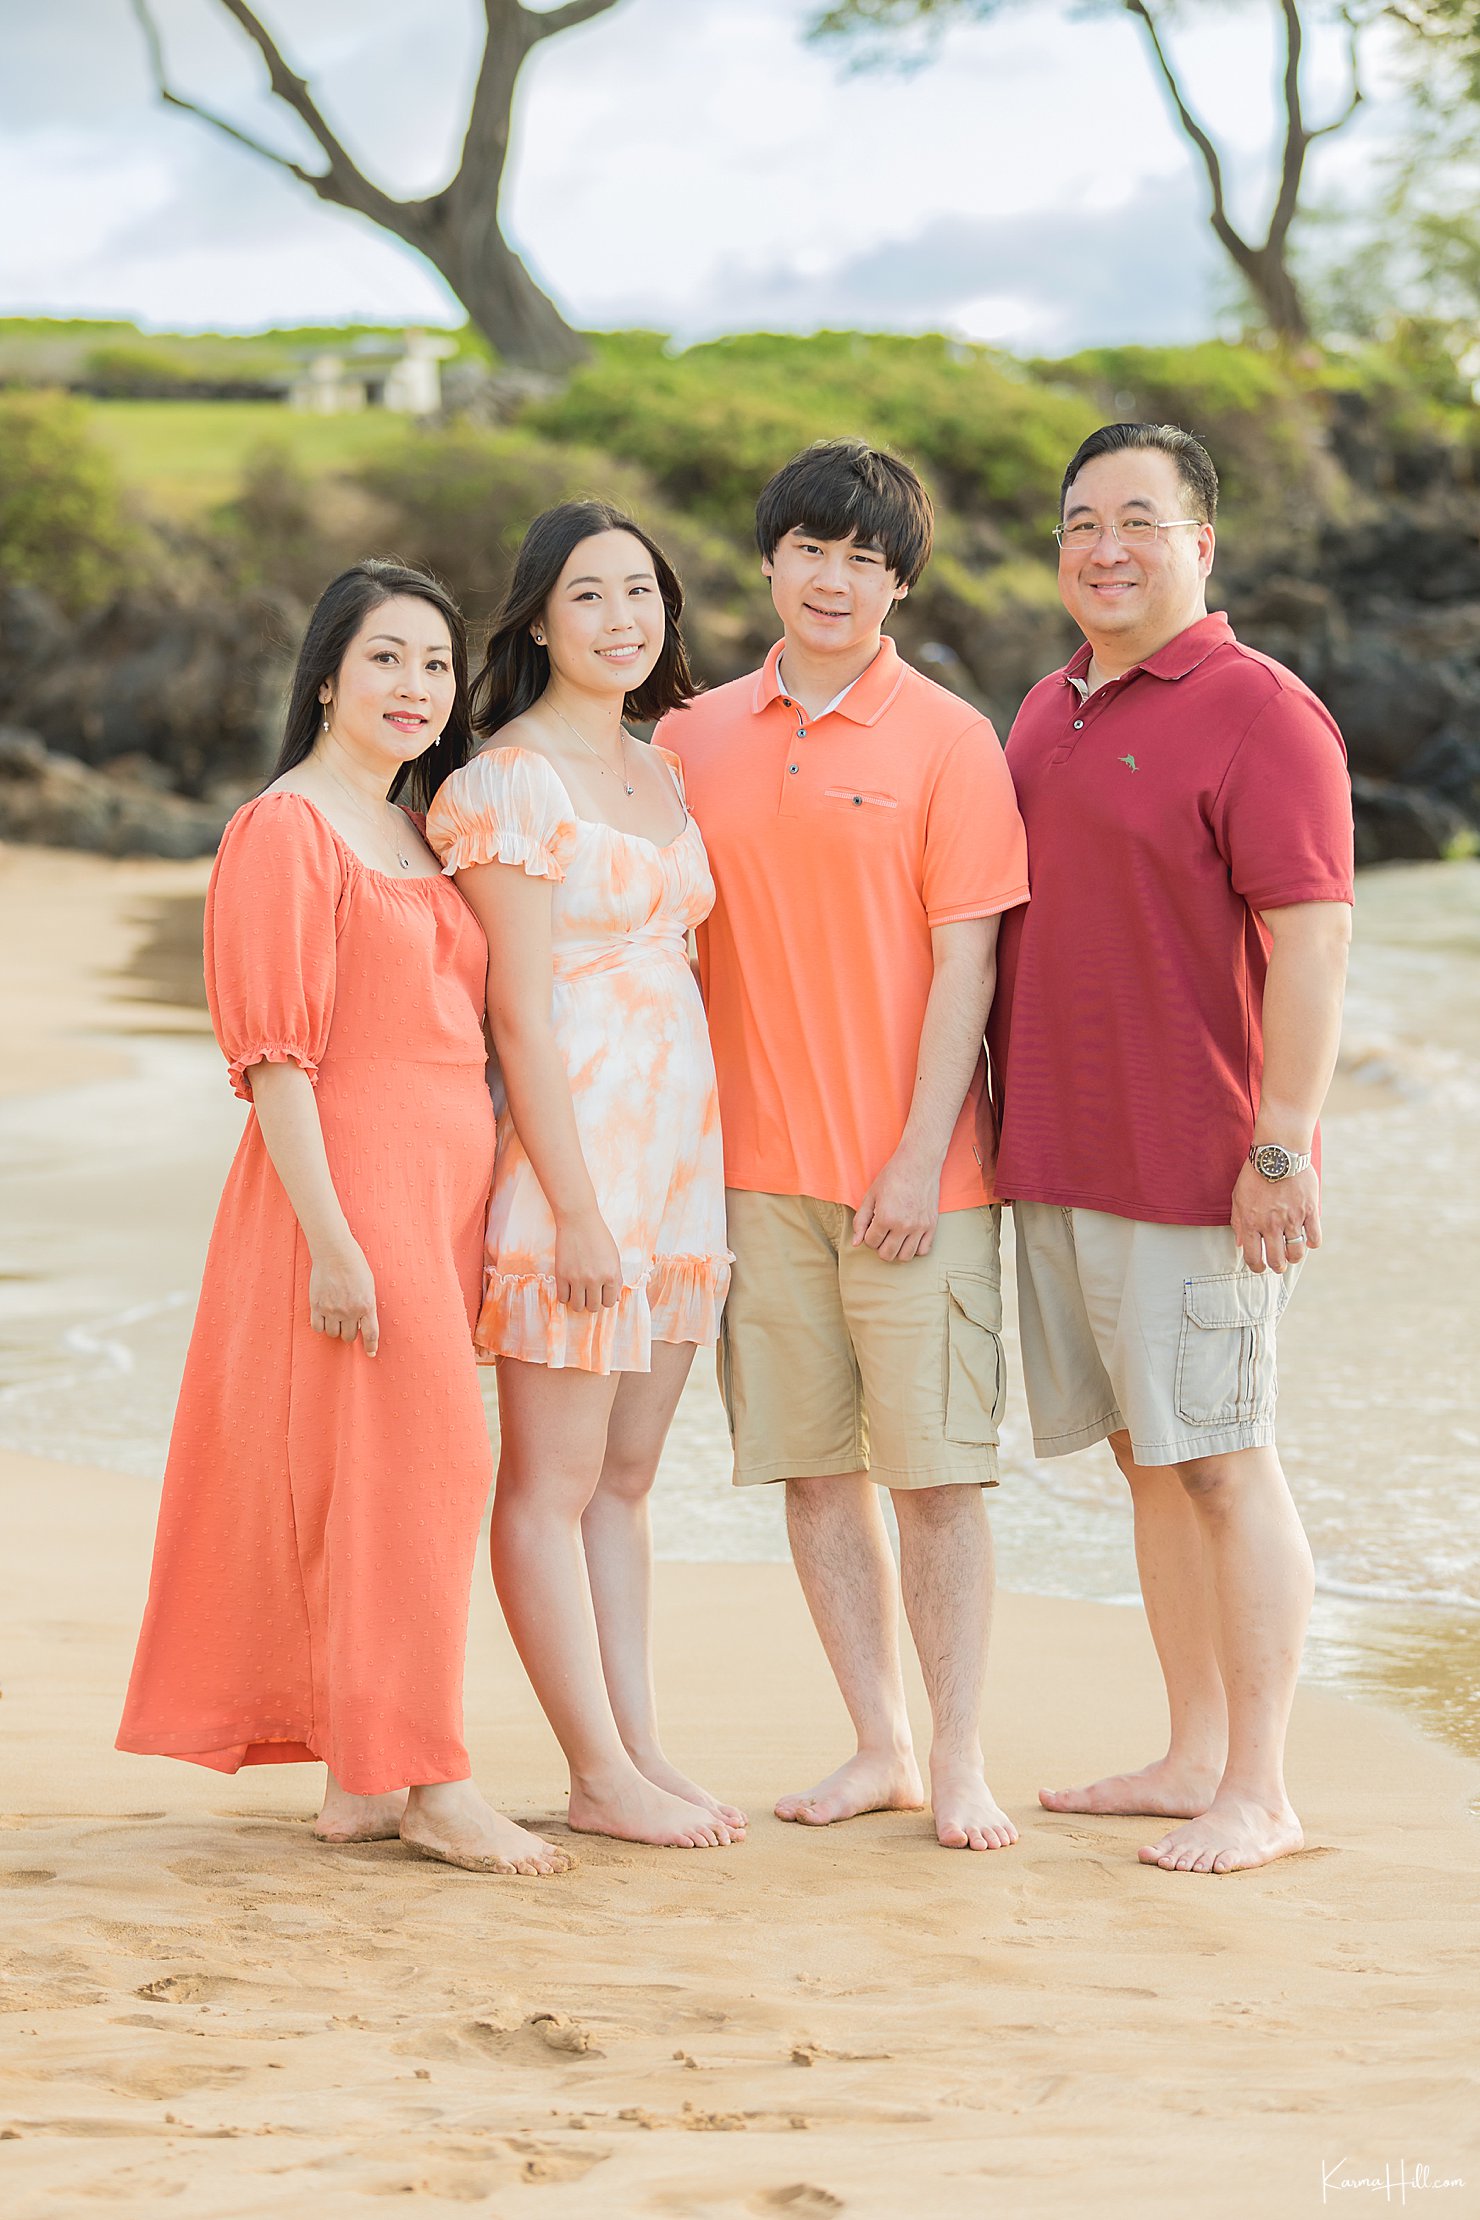 Hawaii Family Photographers on Beach